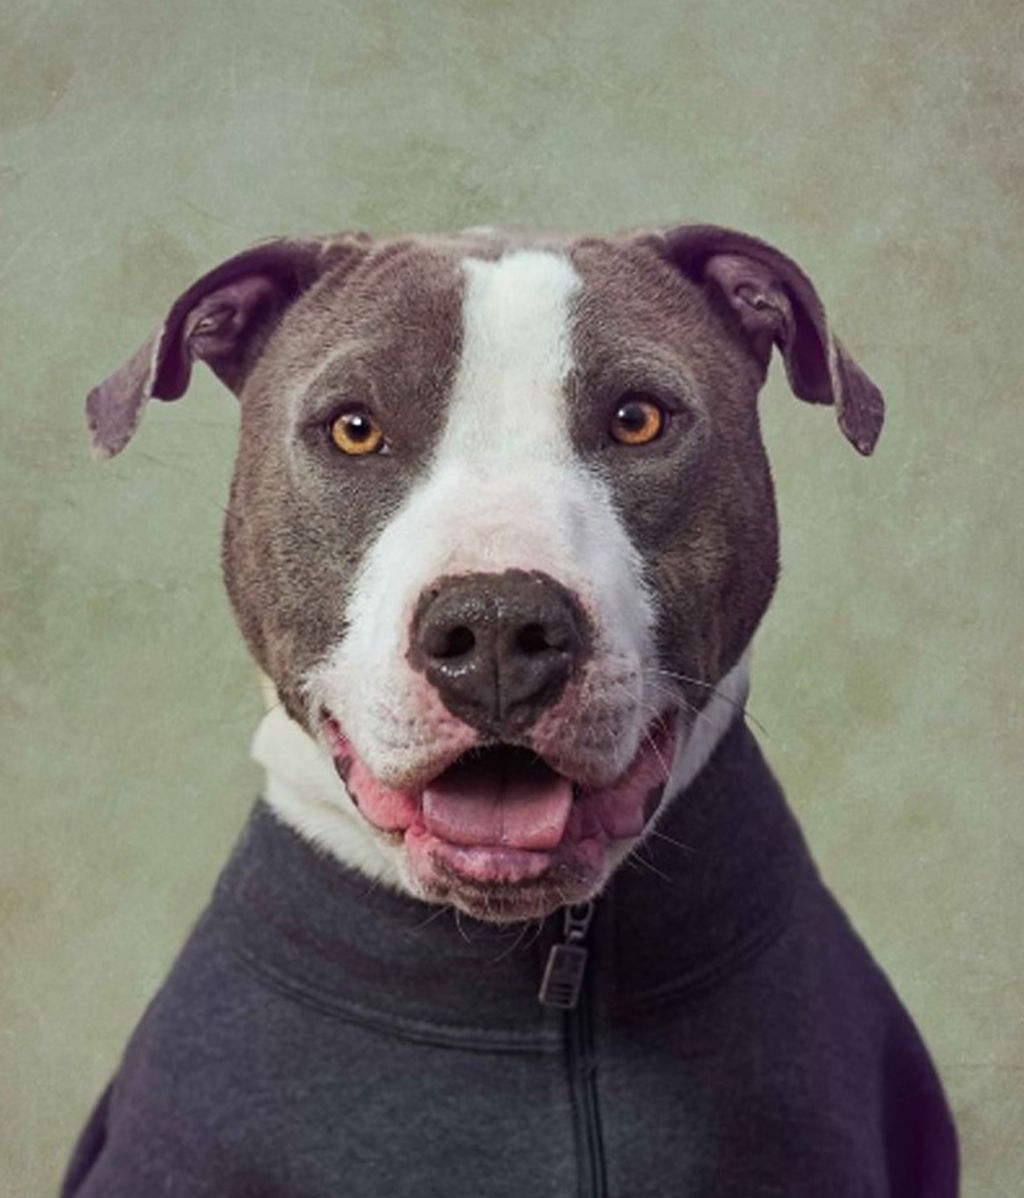 La original ayuda de una fotógrafa para que se adopte perros abandonados